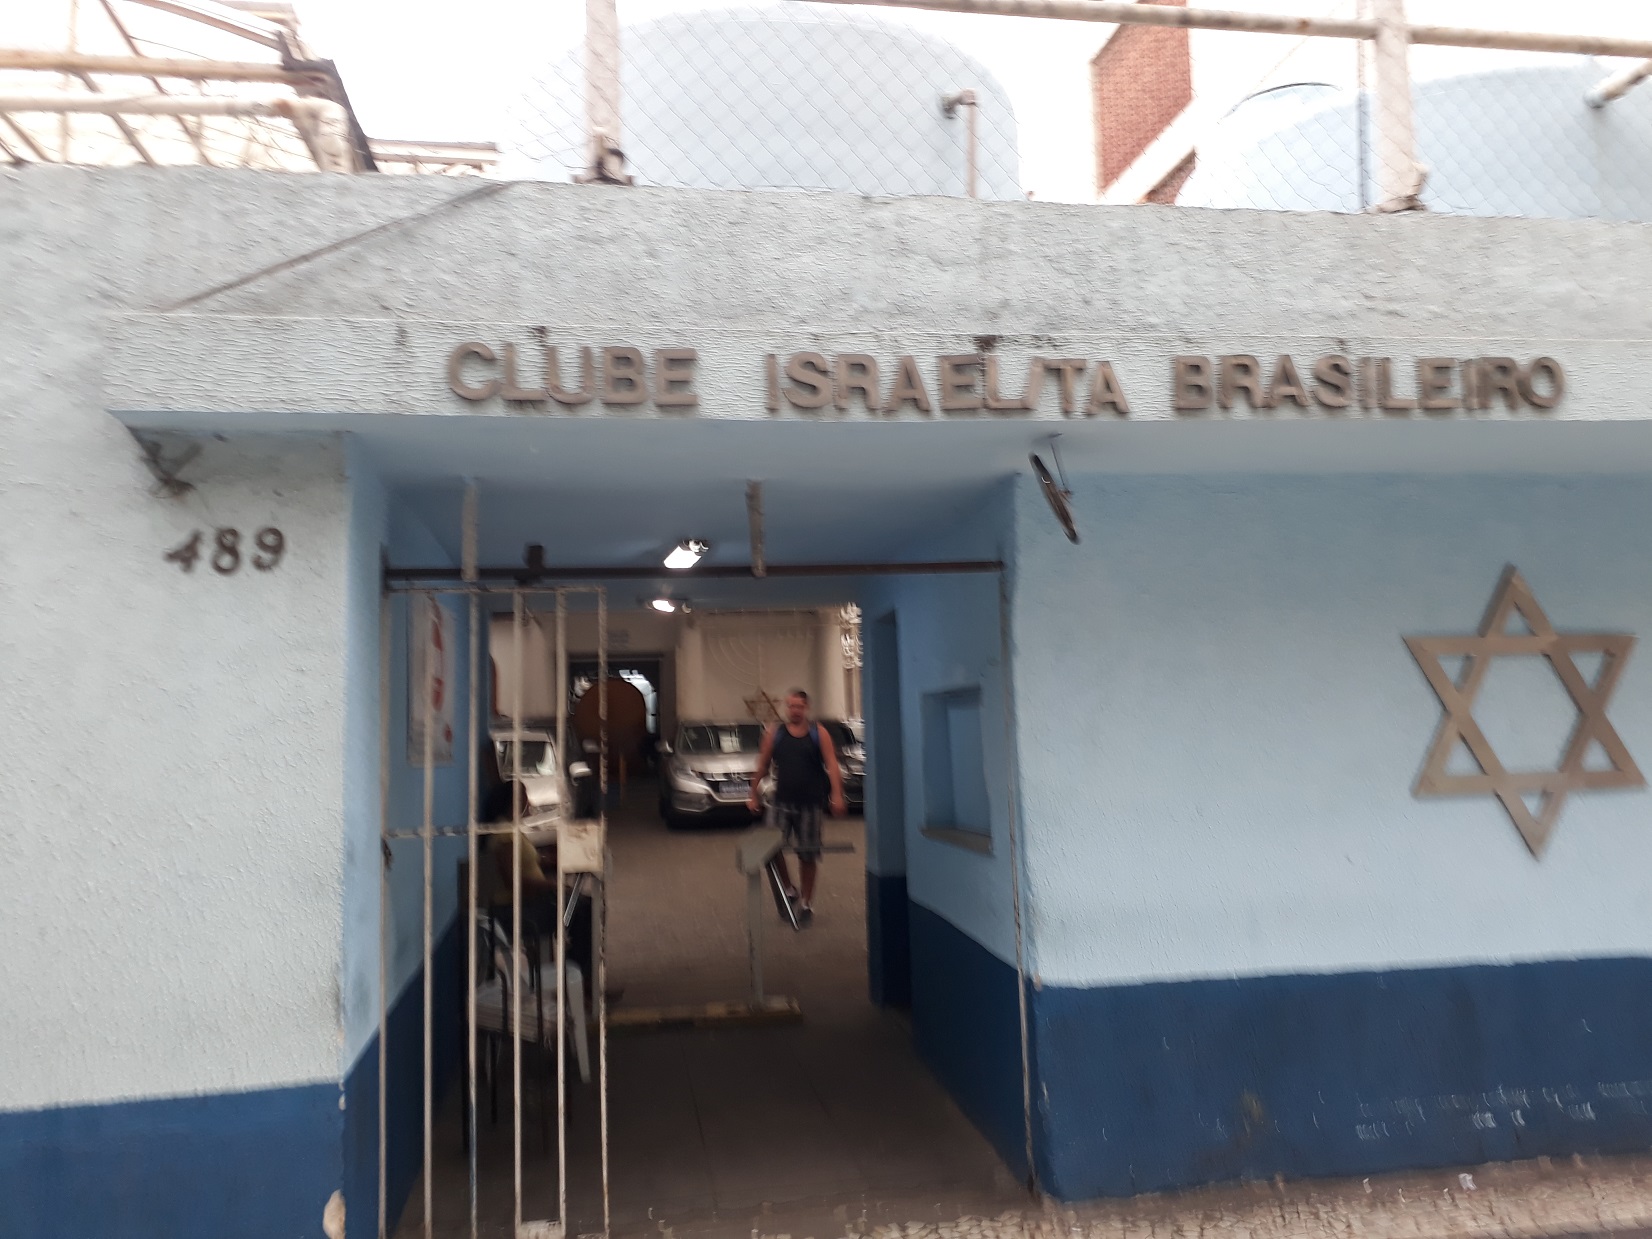 . Clube Israelita Brasileiro - Rio de Janeiro